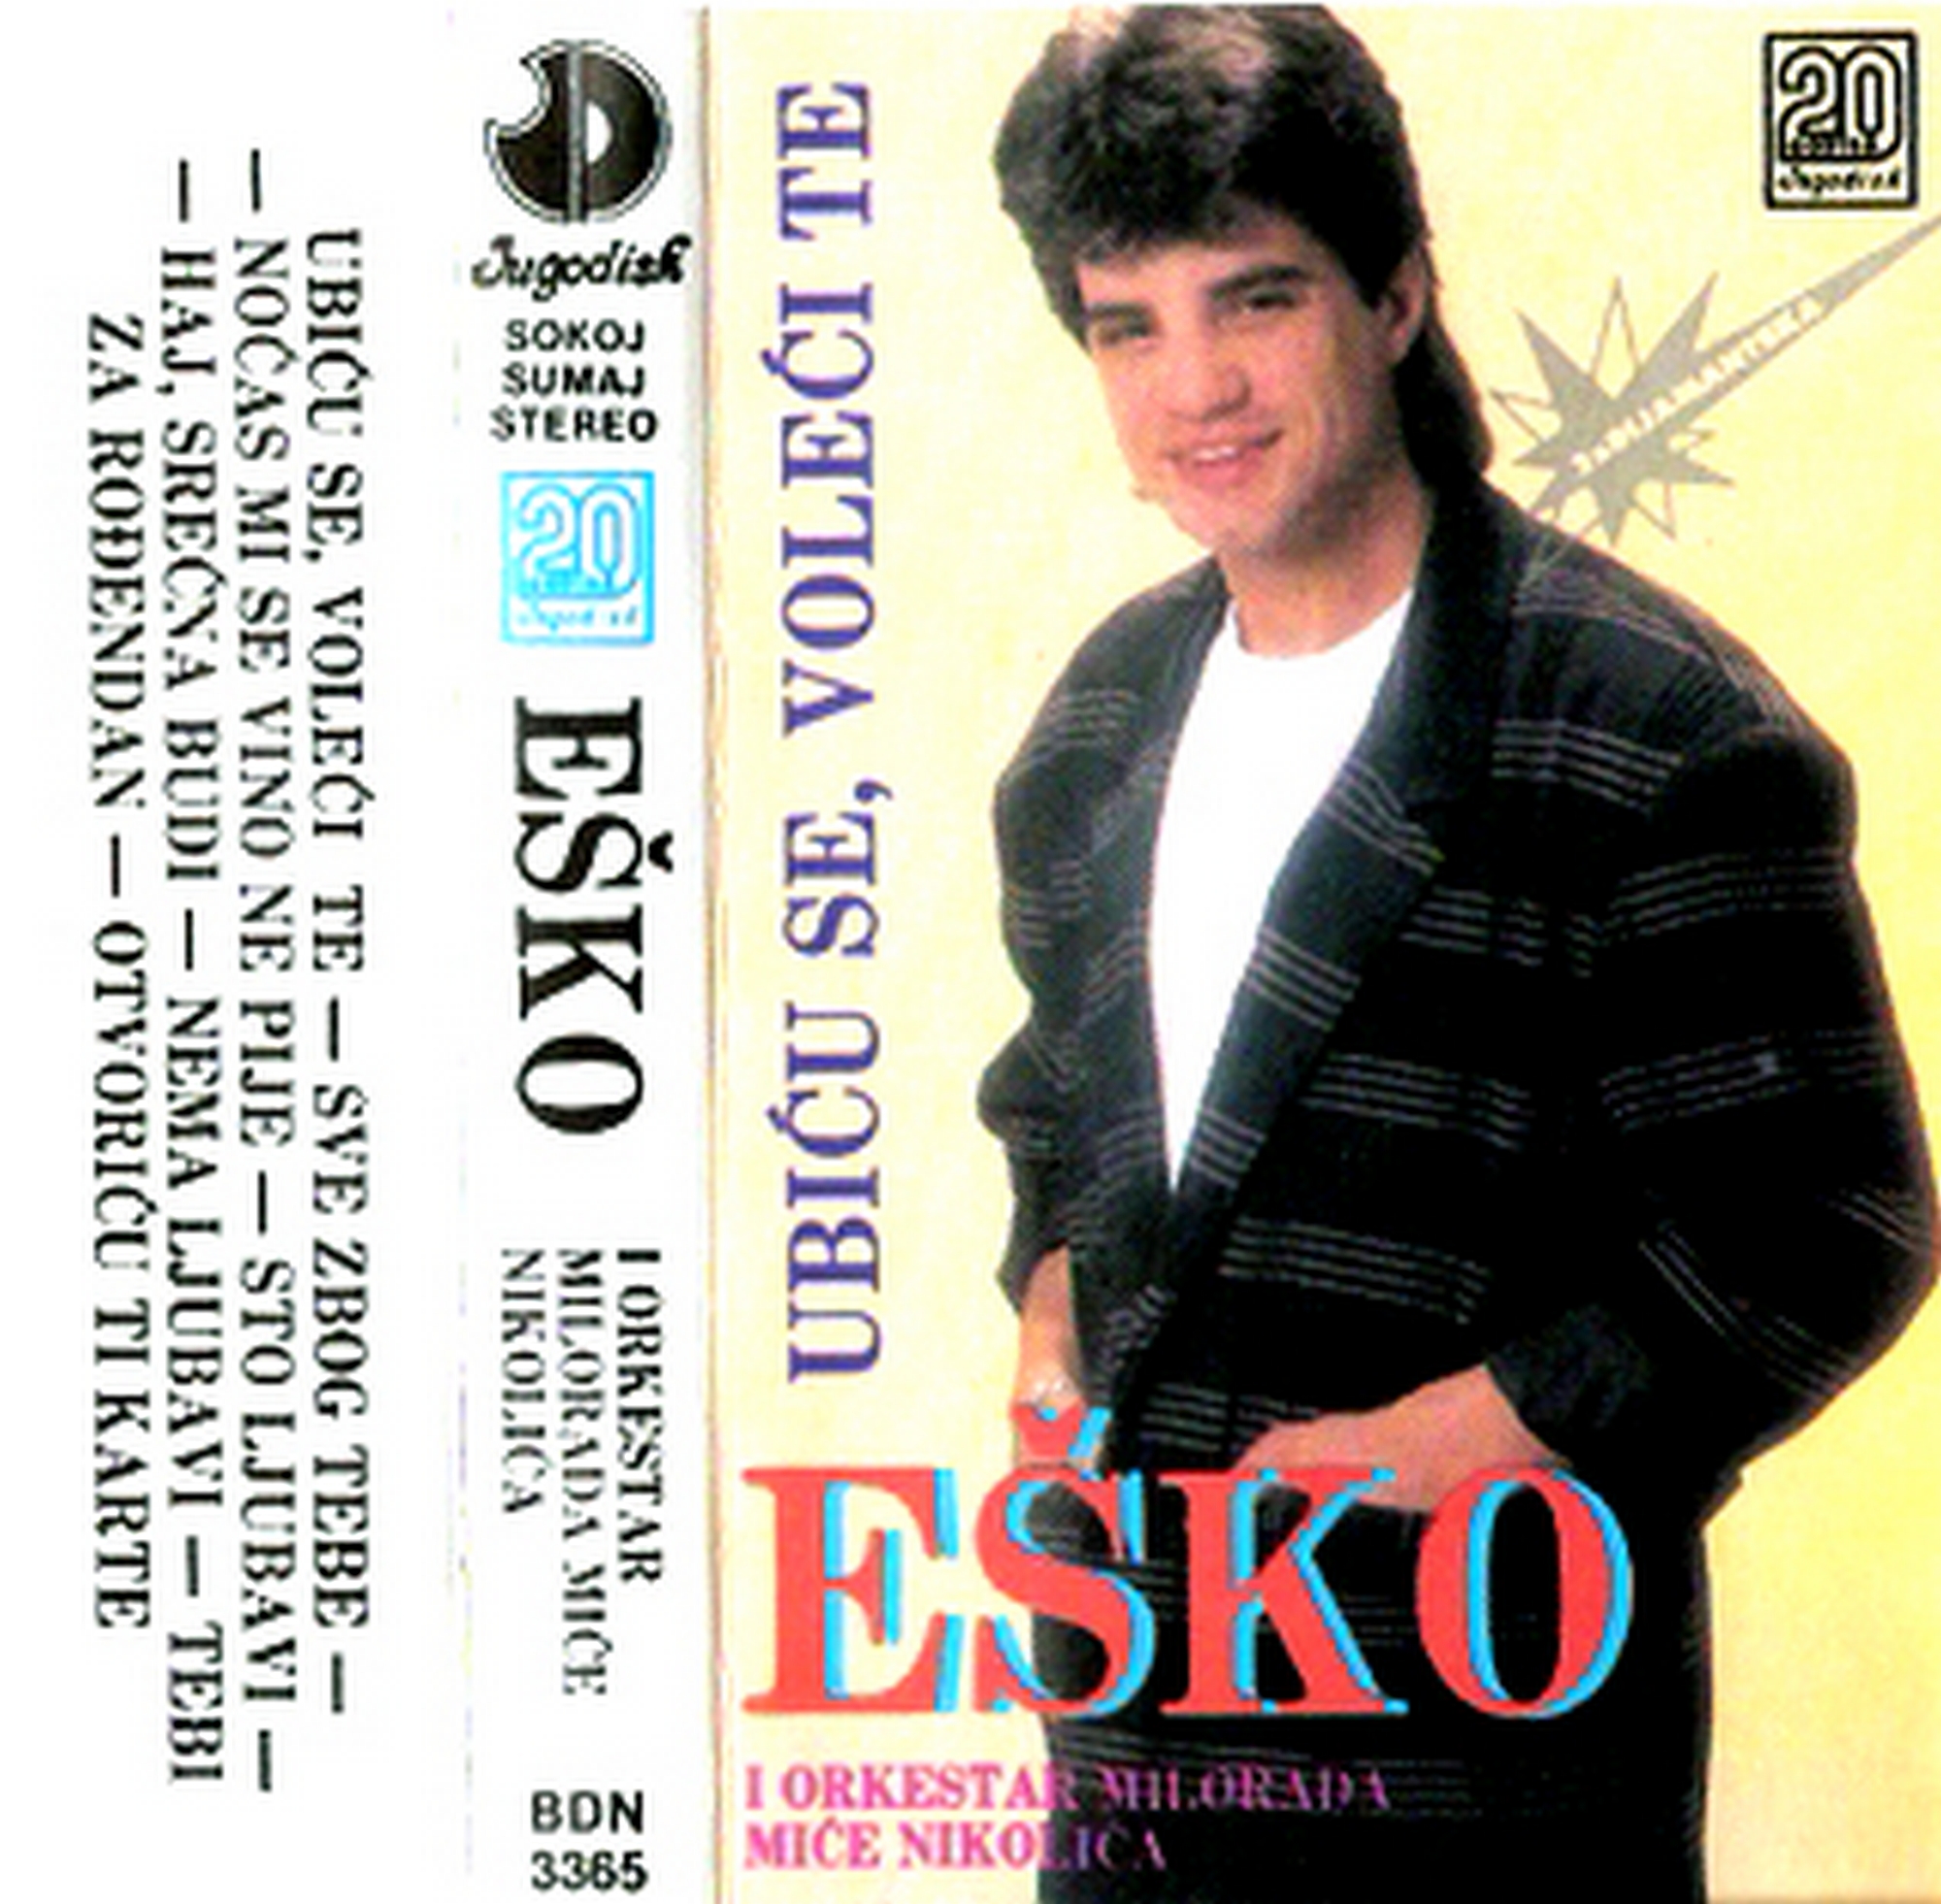 Esko Haskovic 1988 1